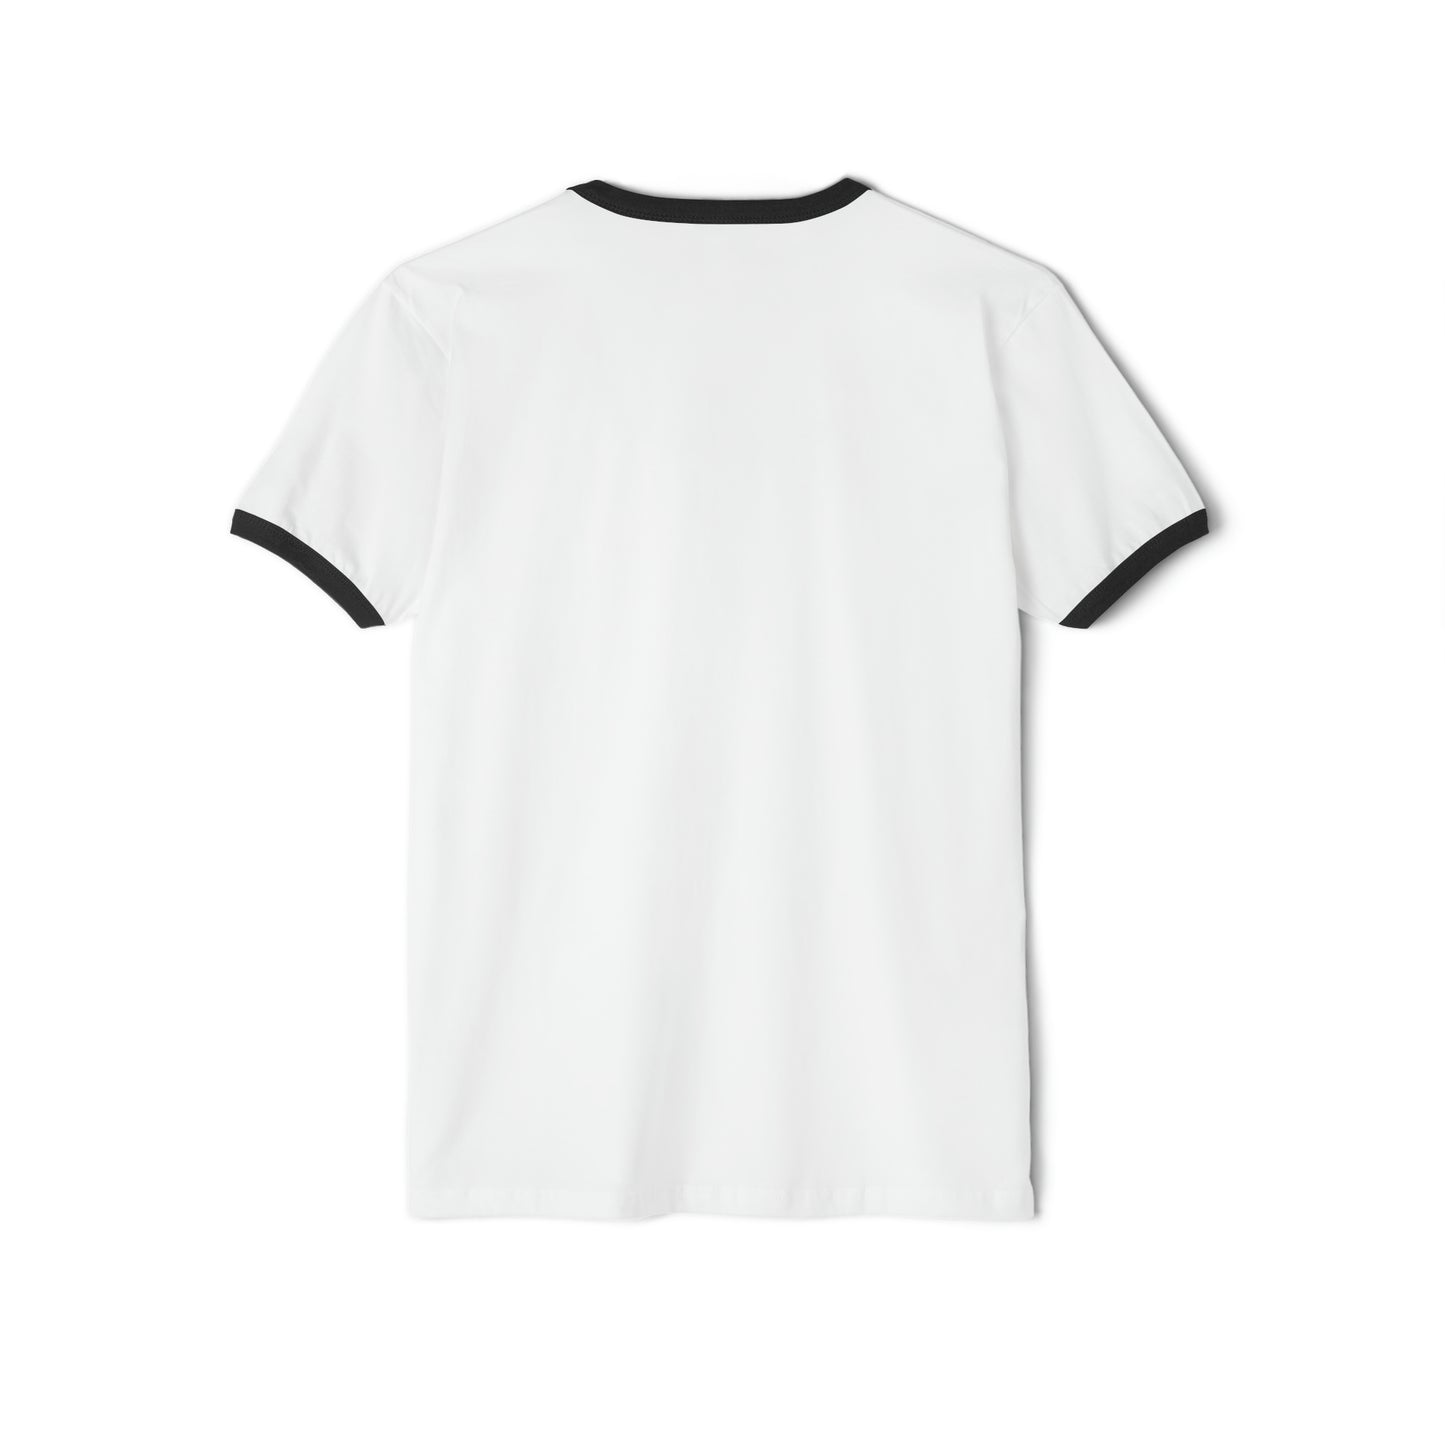 THE RÉMIX by Dave Audé (Black on White) Unisex Cotton Ringer T-Shirt